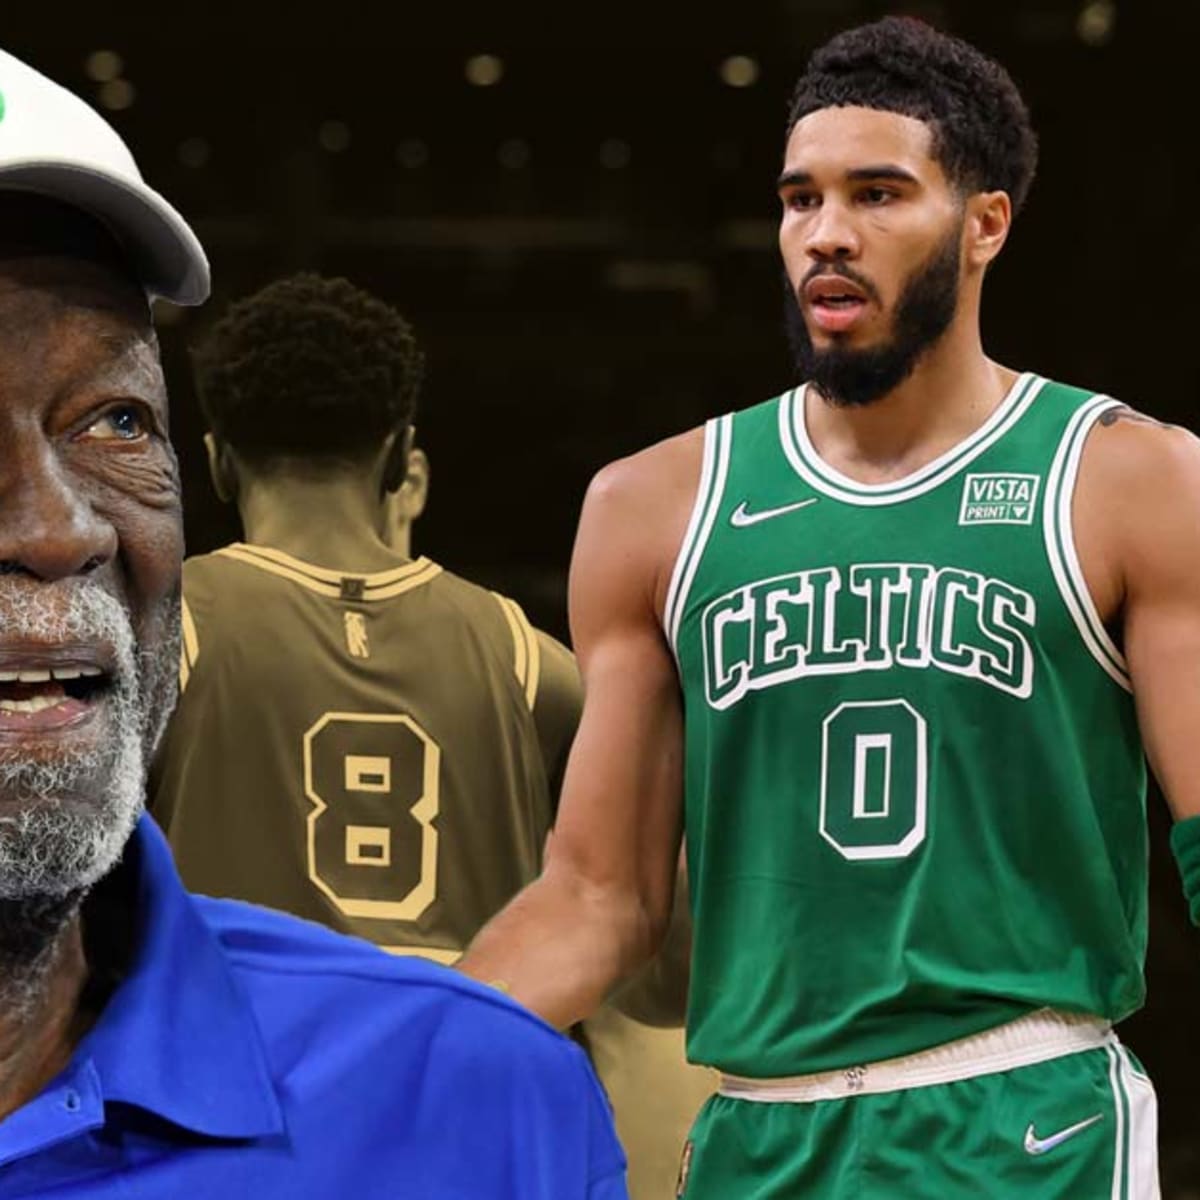 Celtics legend Bill Russell wears Lakers jersey in honor of Kobe